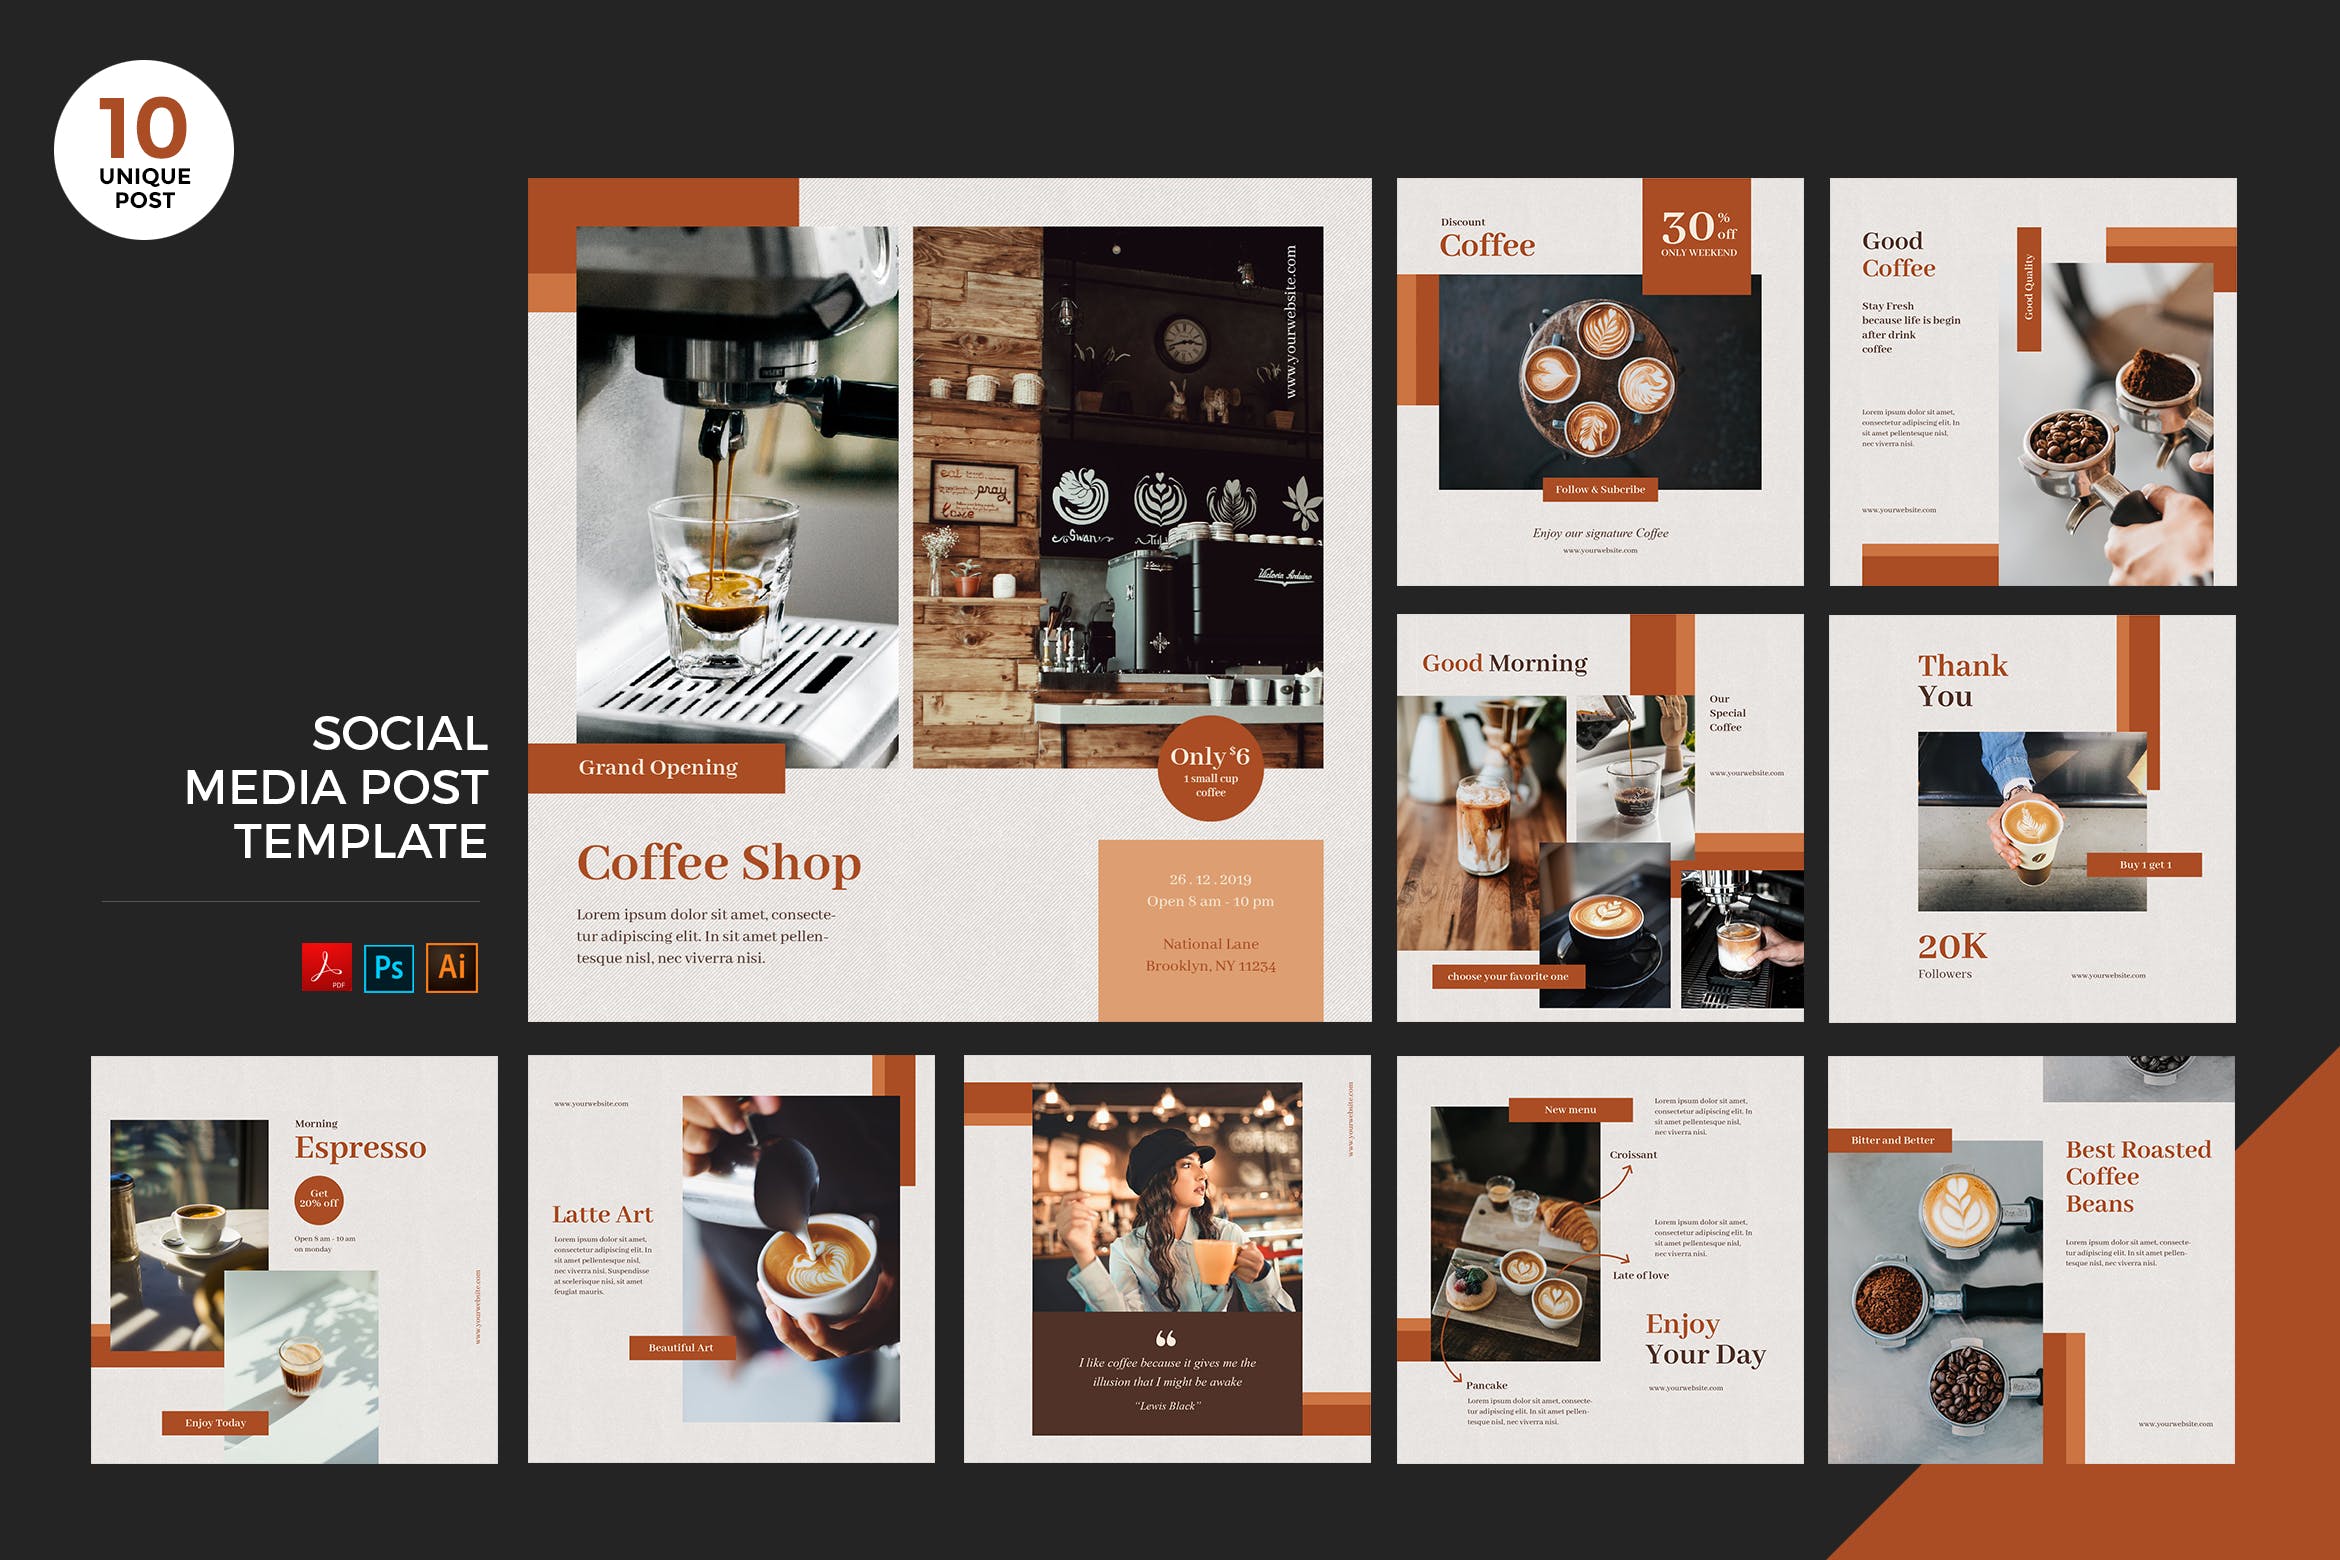 咖啡店社交媒体宣传推广设计素材包[PSD&AI] Coffee Shop Social Media Kit PSD & AI插图